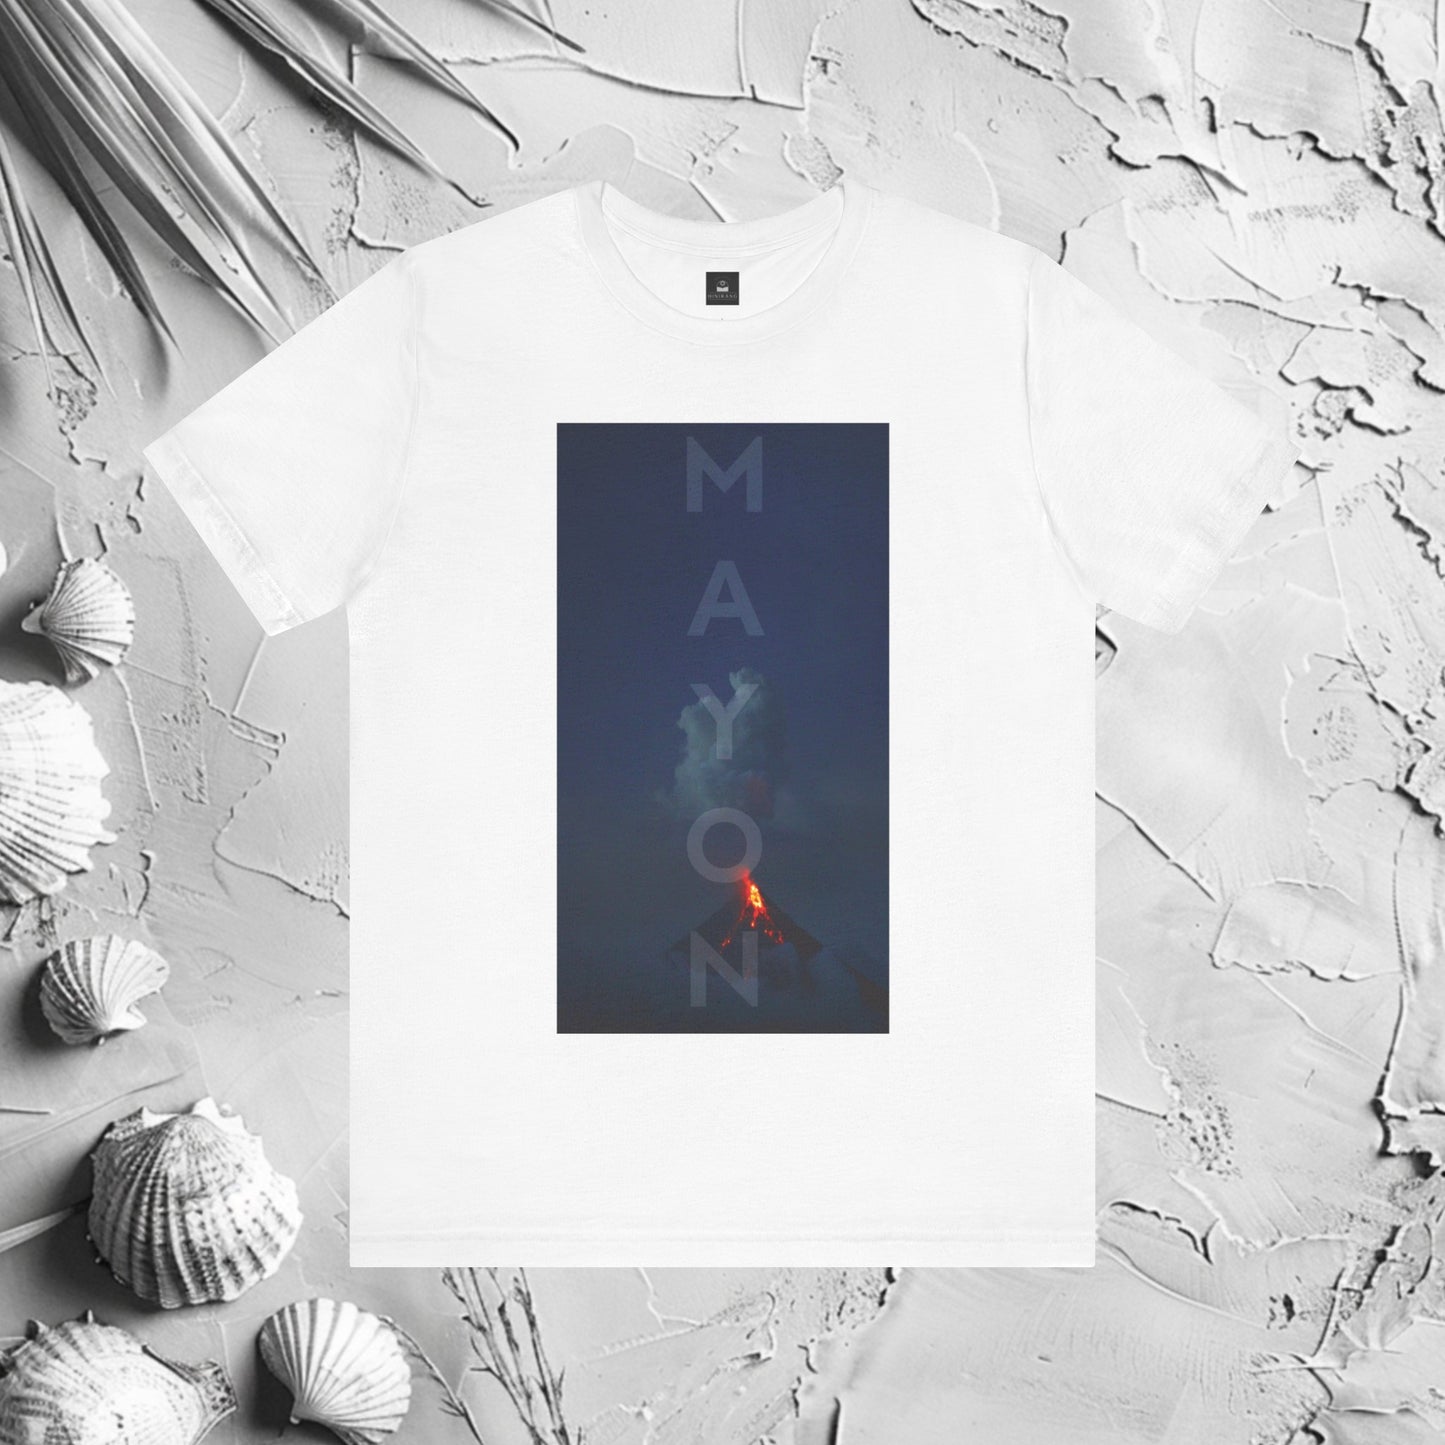 Mayon Graphic T-Shirt